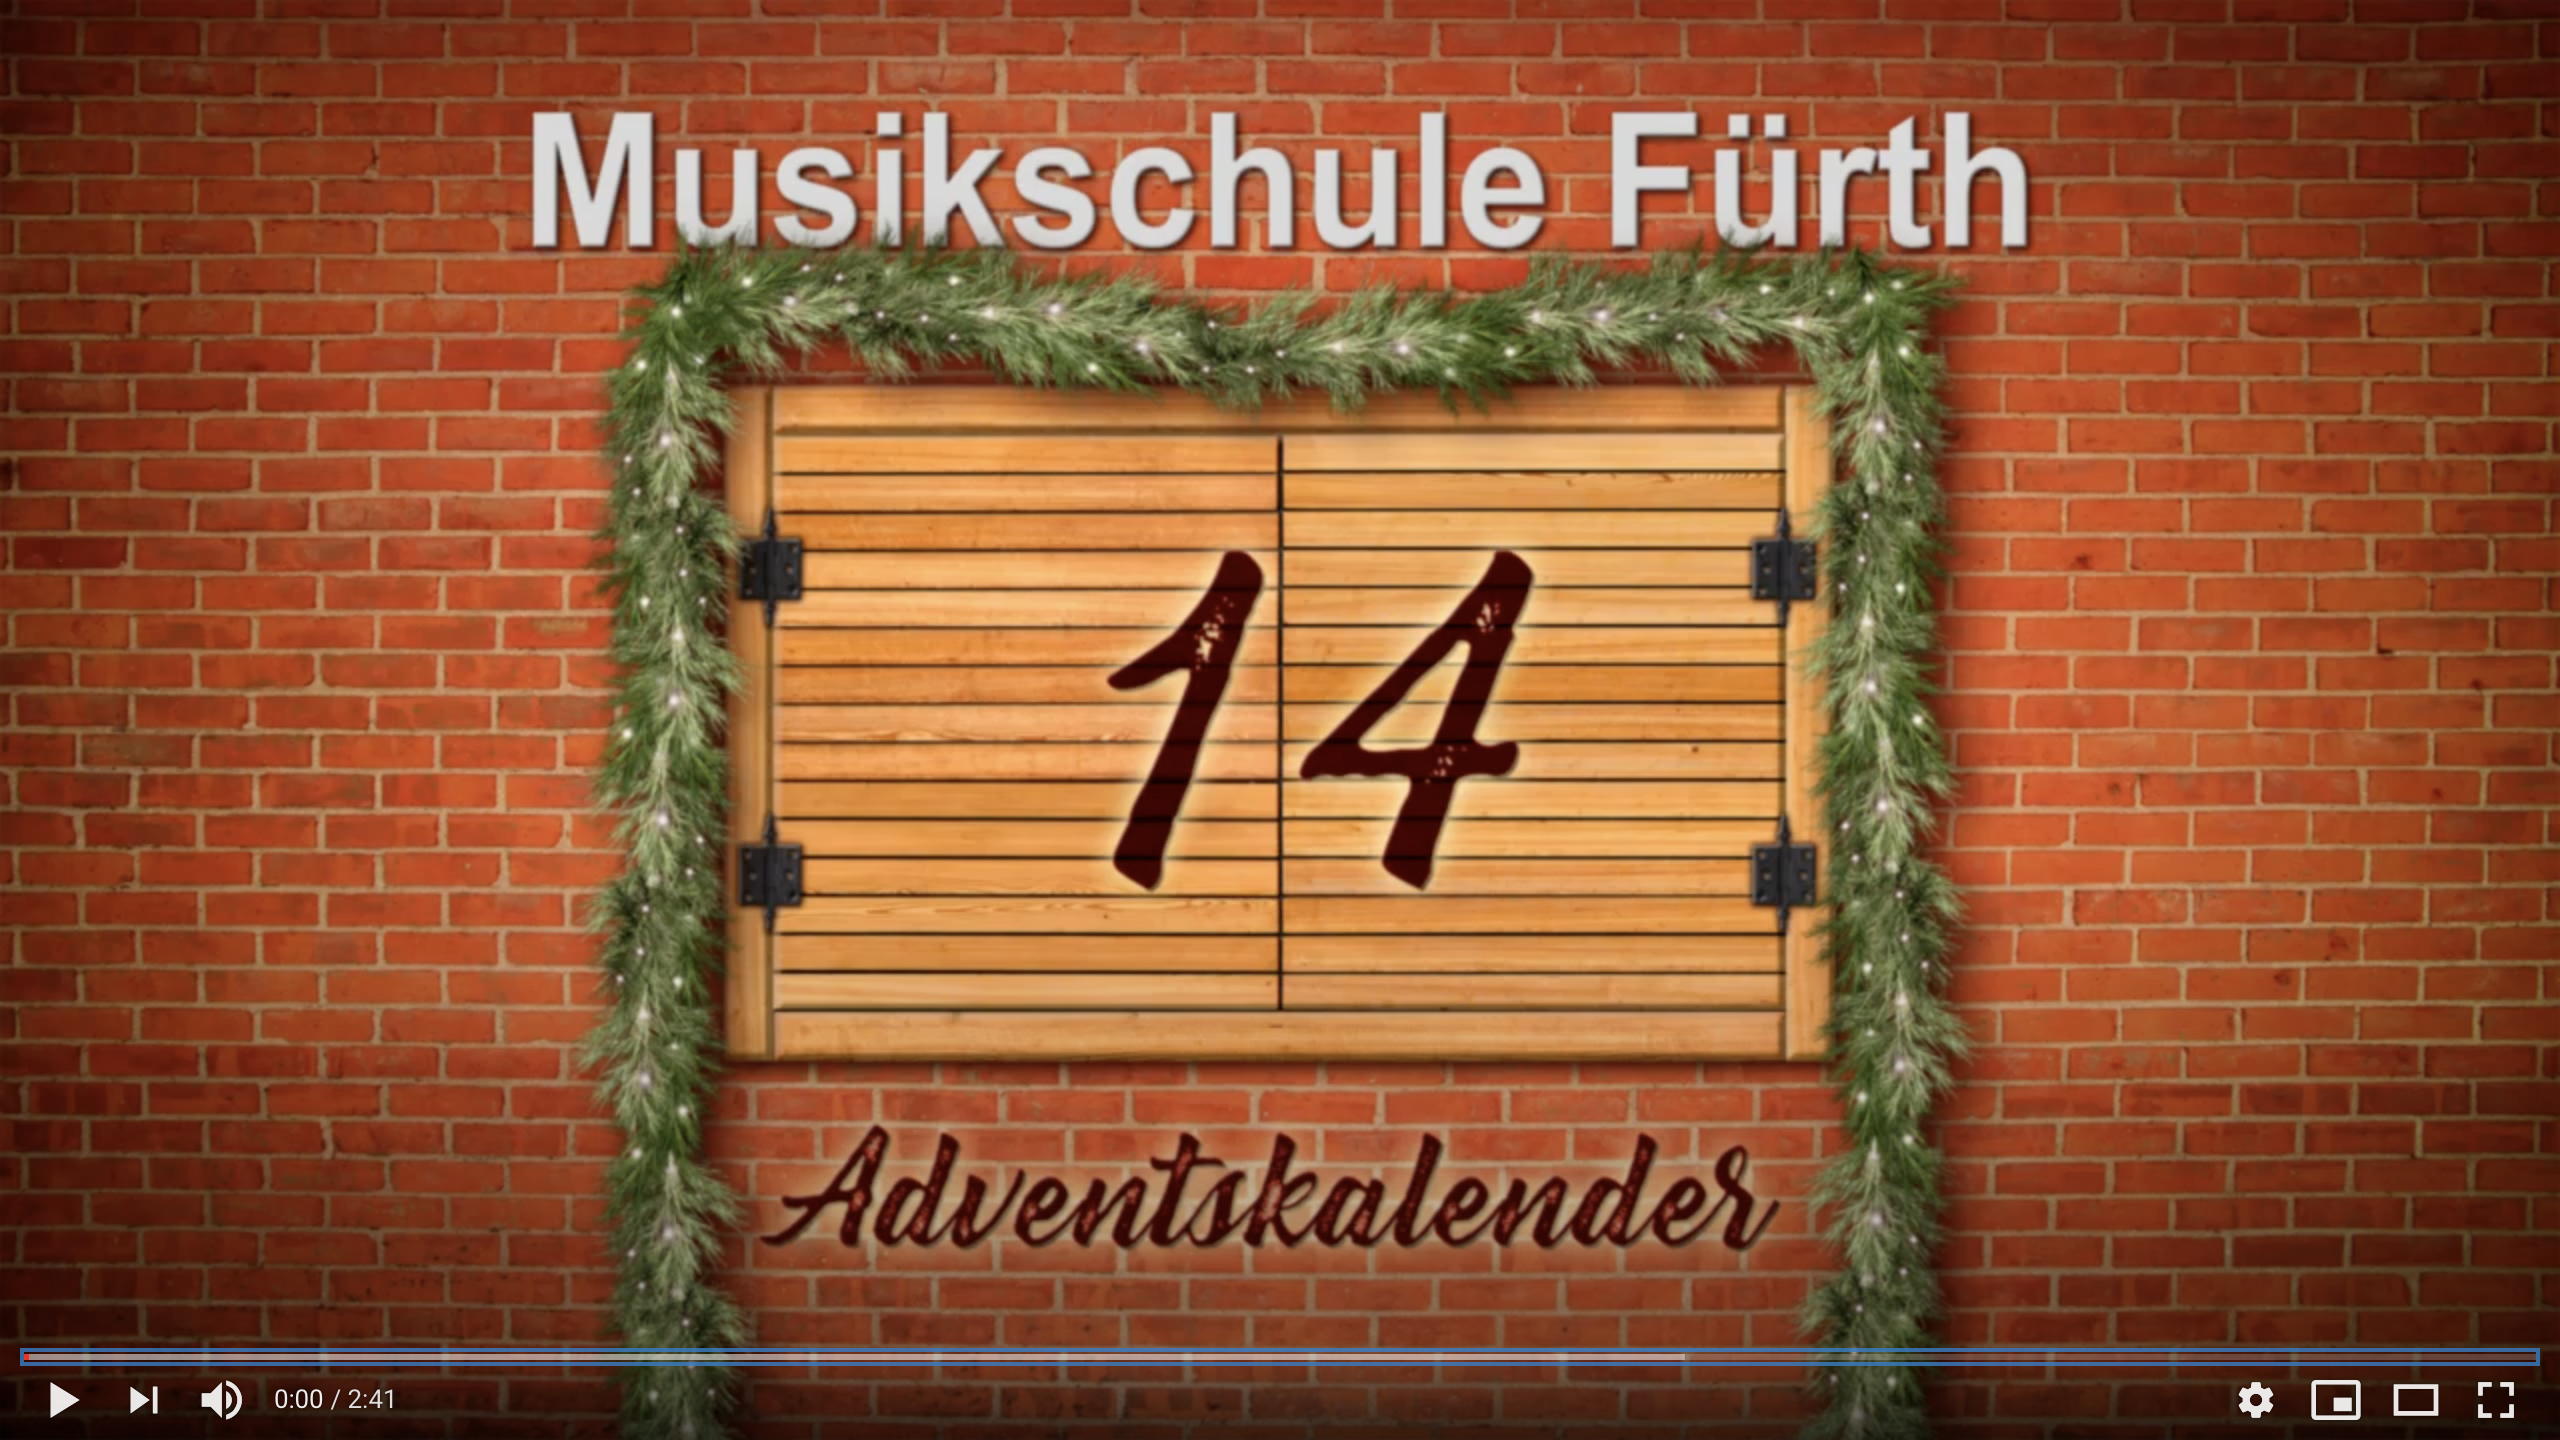 Musikschule Fürth: Adventskalender vom 14.12.2020